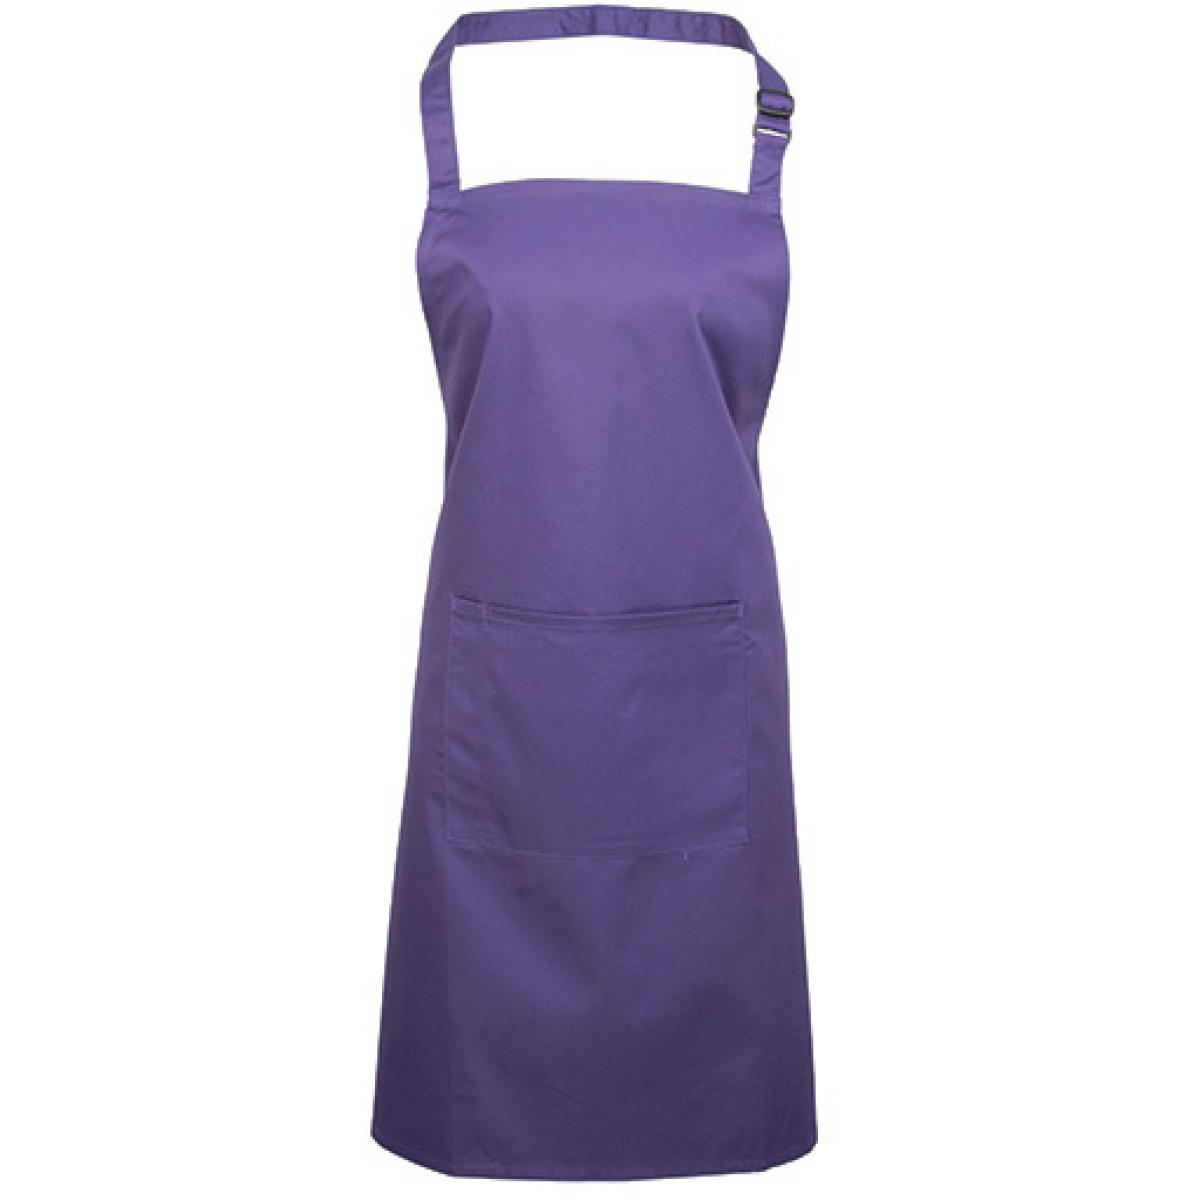 Hersteller: Premier Workwear Herstellernummer: PR154 Artikelbezeichnung: Colours Bib Apron With Pocket - 72 x 86 cm - Waschbar bis 60 Farbe: Purple (ca. Pantone 269)